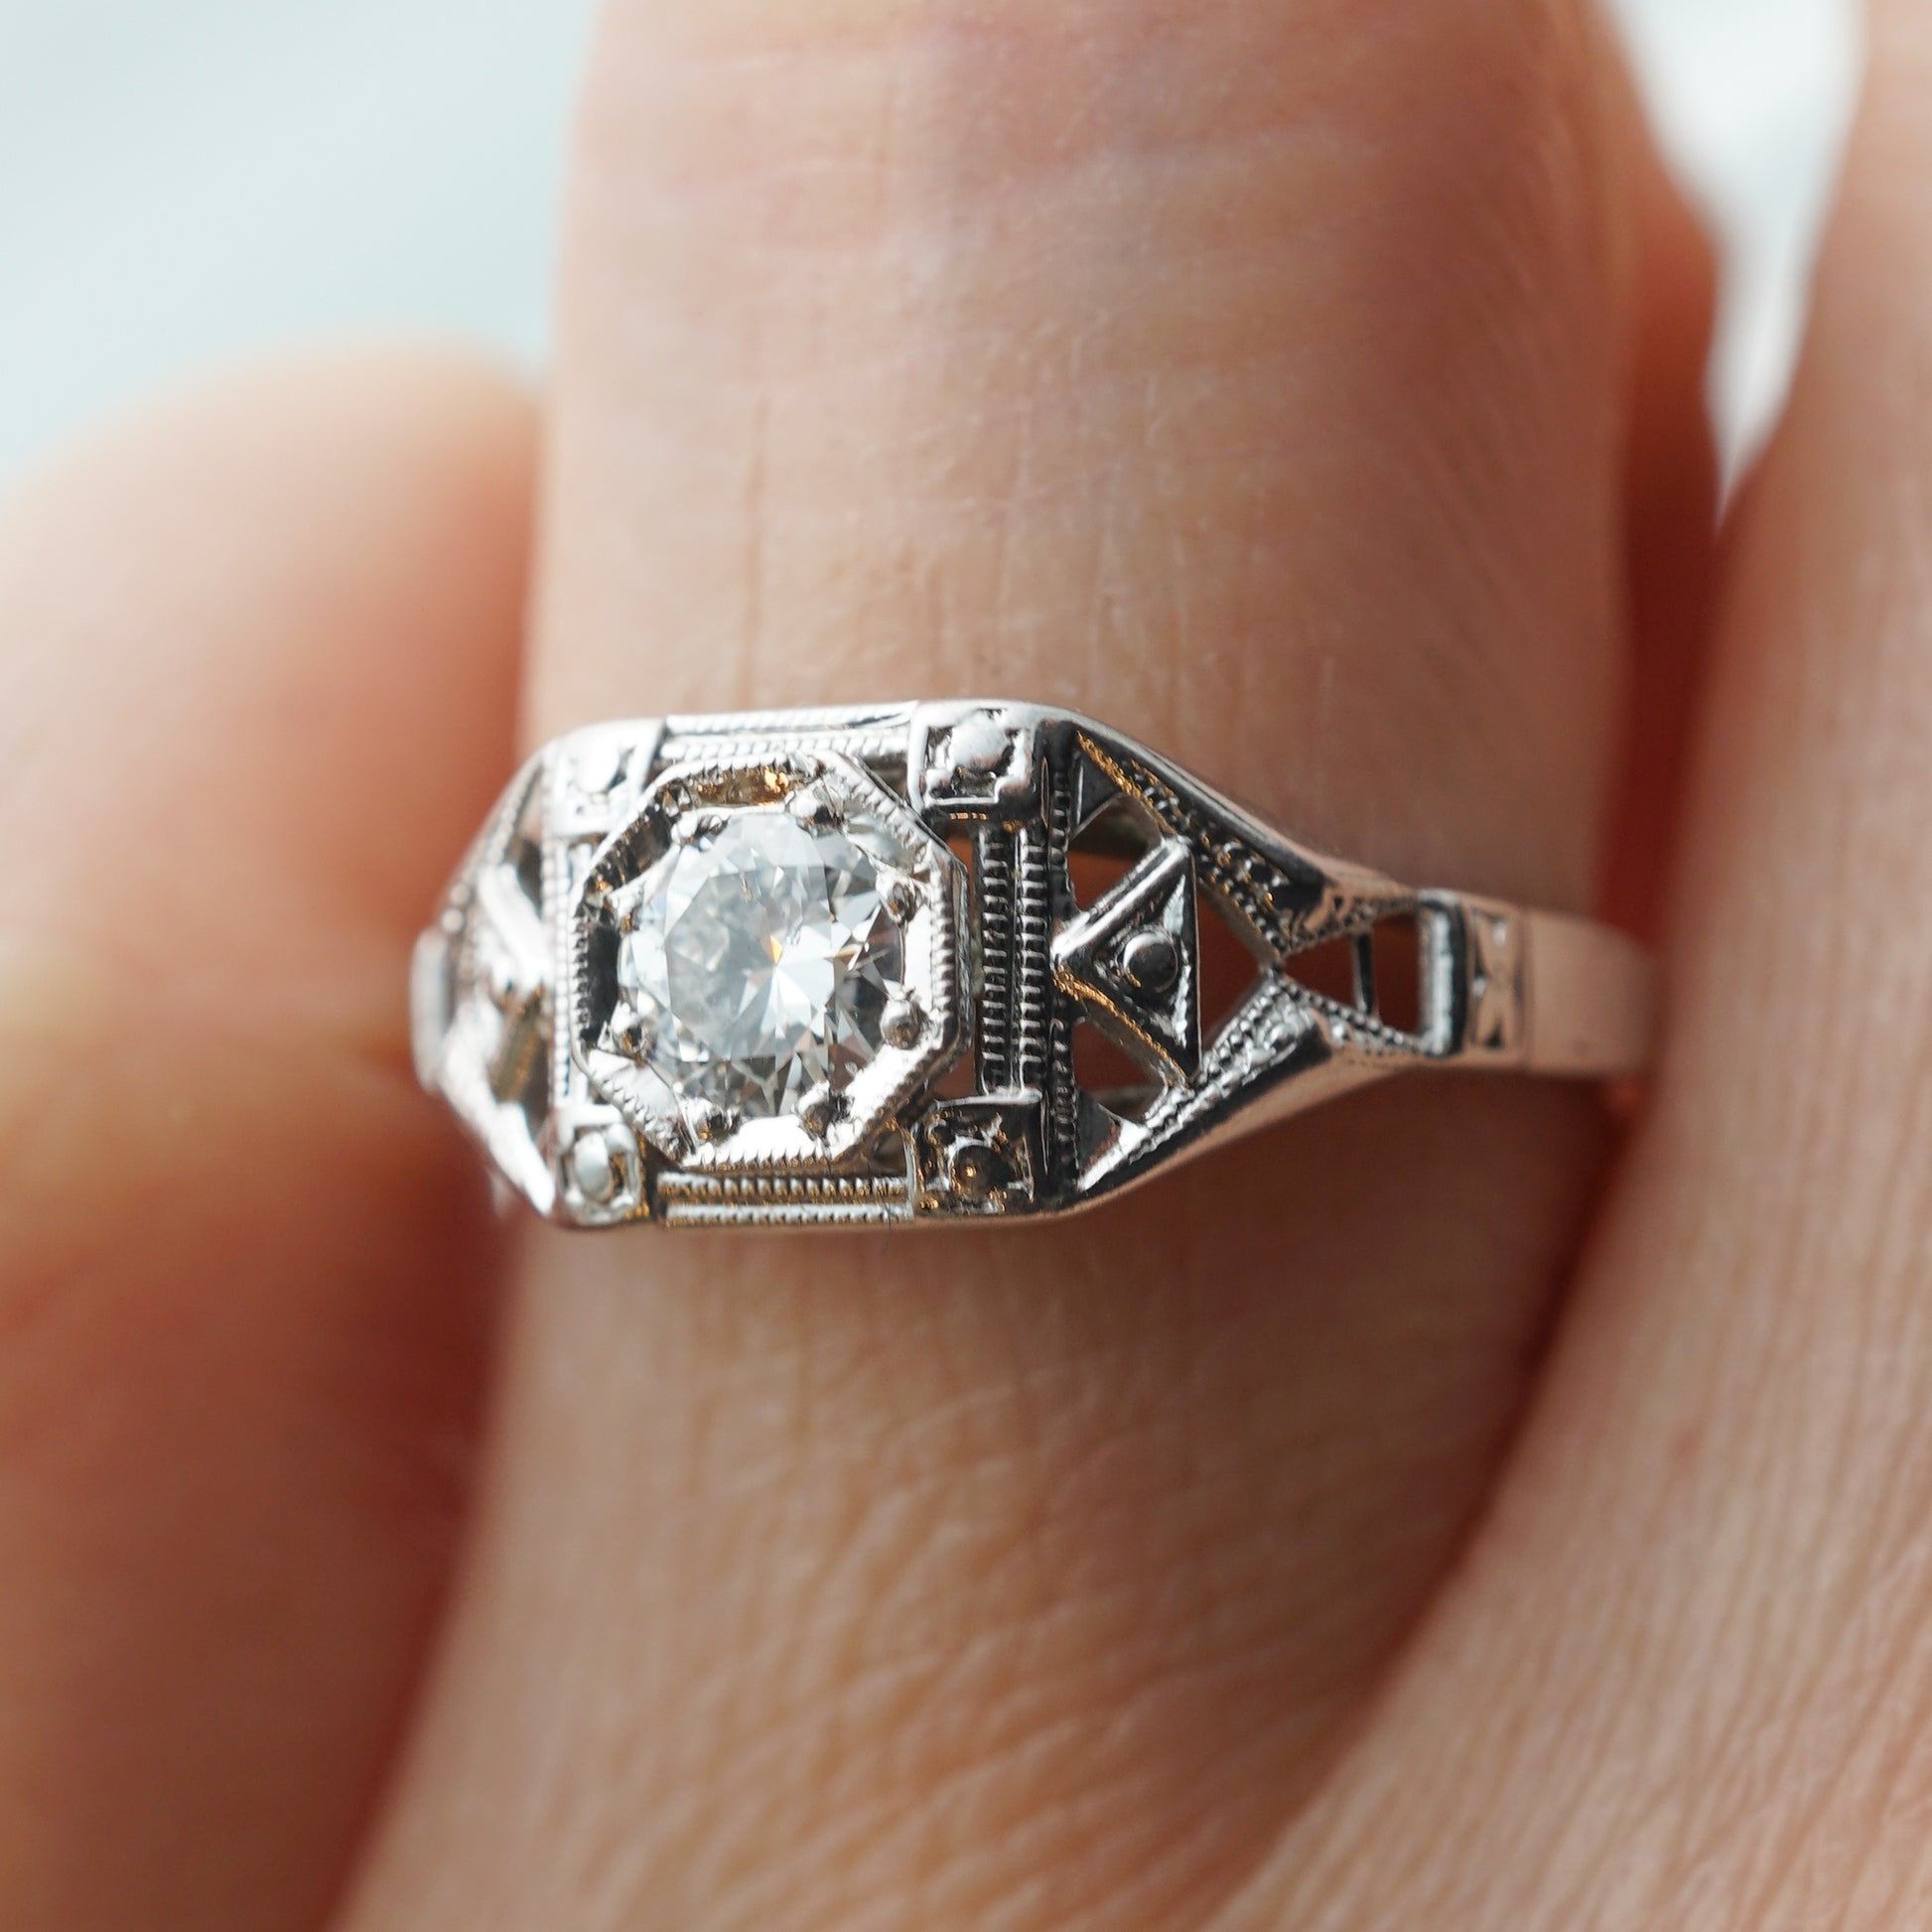 .32 Art Deco Filigree Diamond Engagement Ring in 18k White Gold